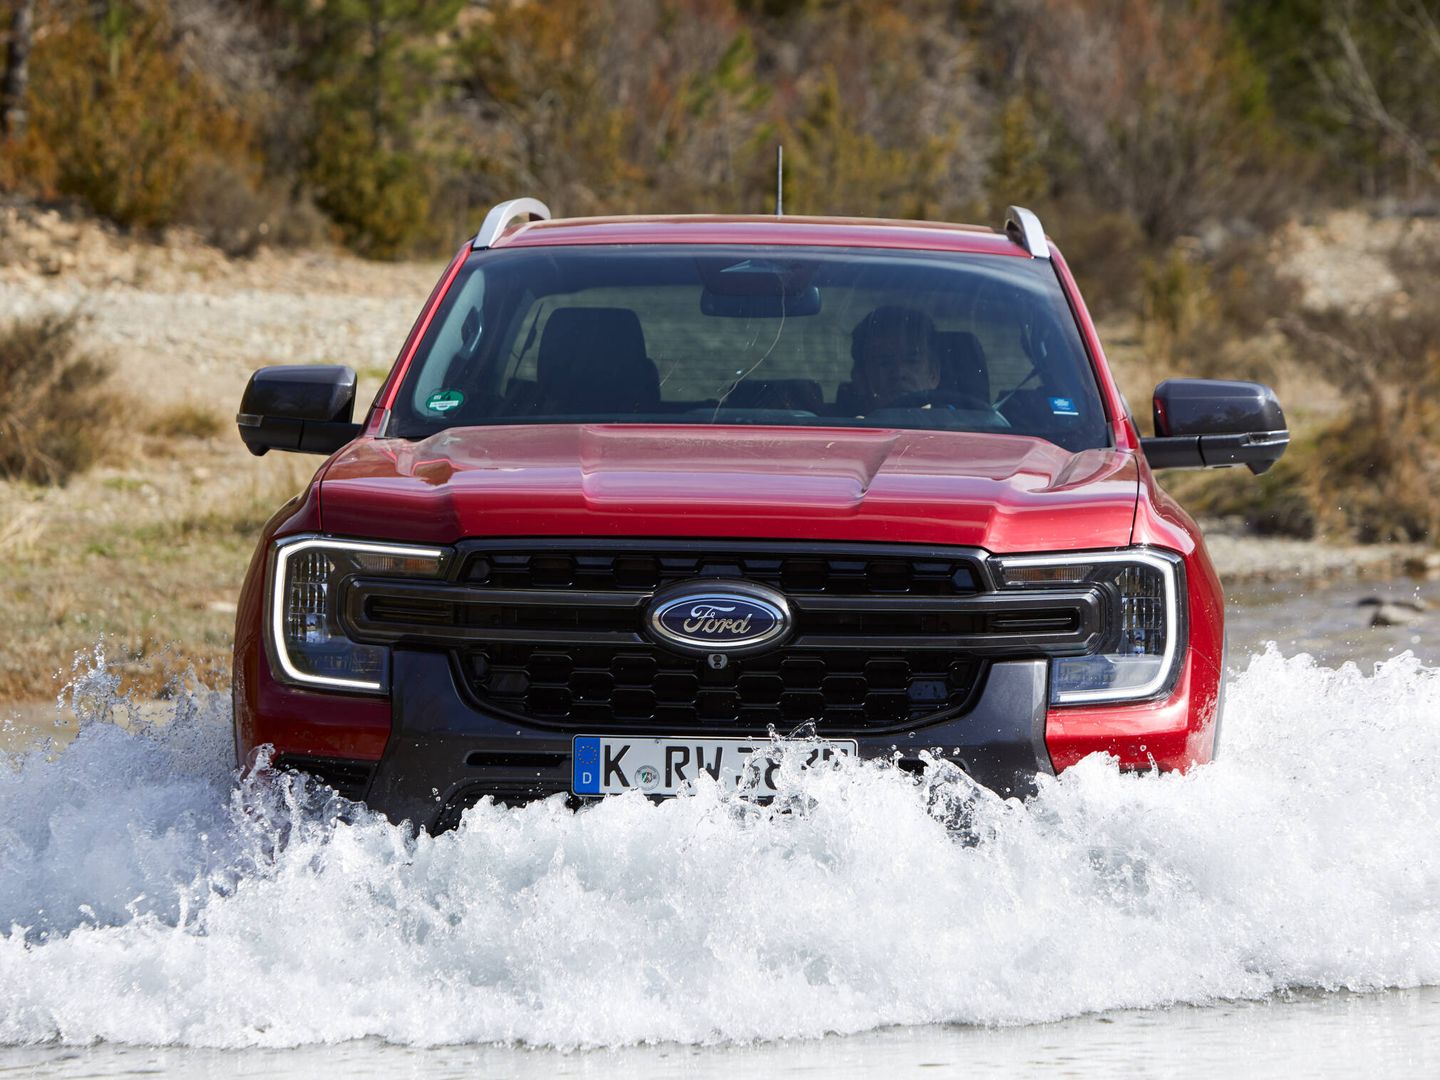 El Ford Ranger puede vadear con profundidades de hasta 80 centímetros.